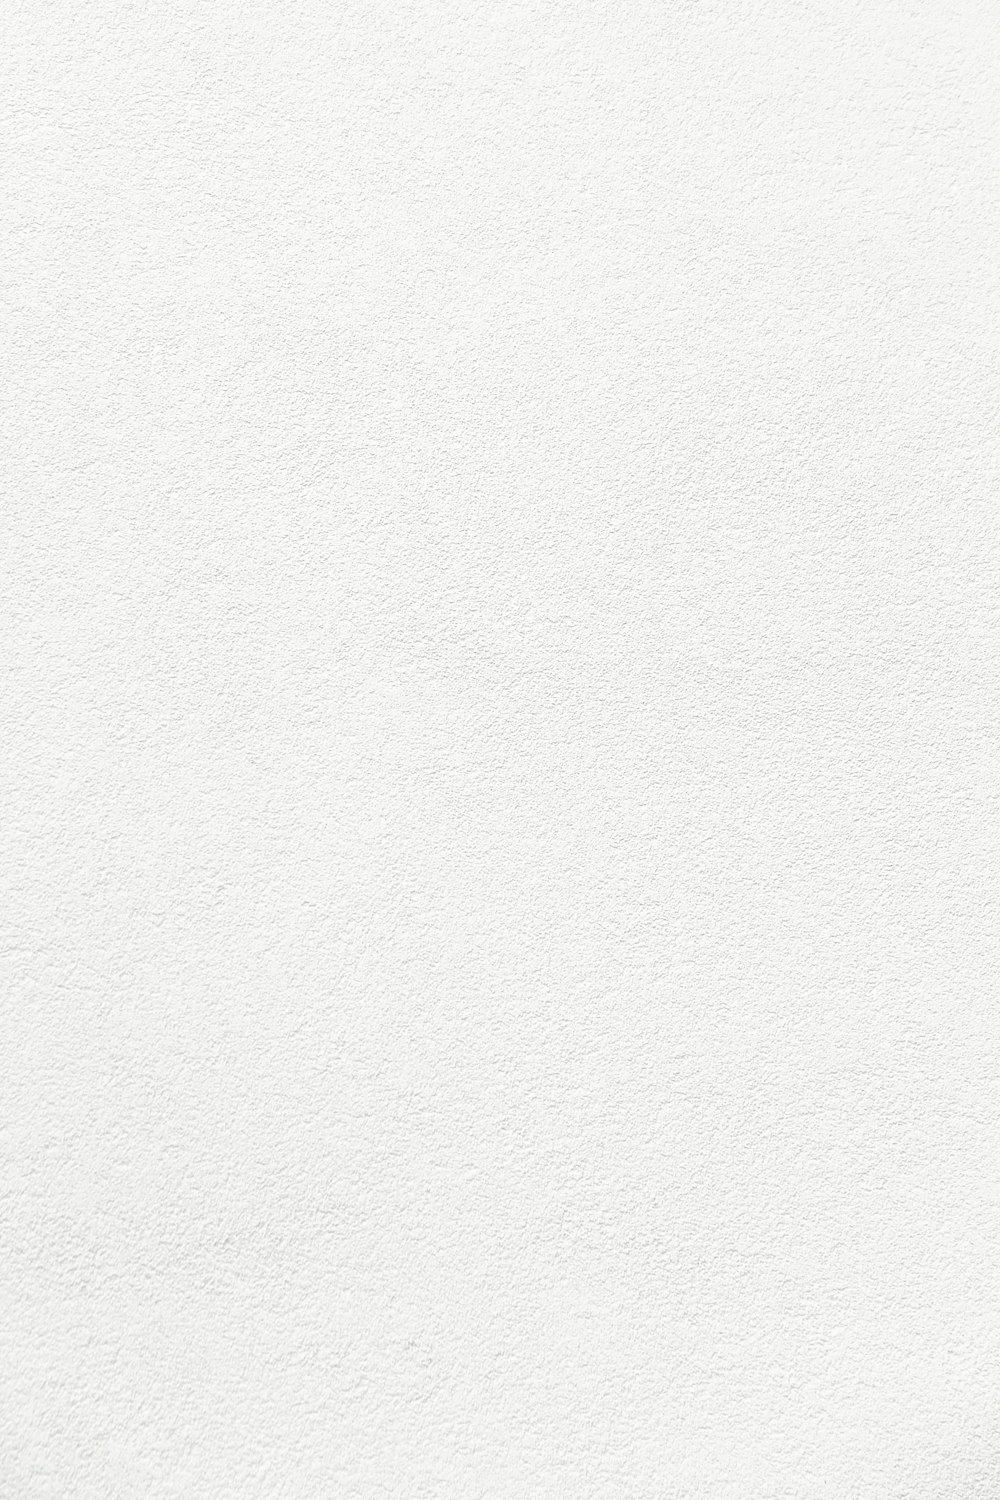 Unsplash - Tổng hợp 1000 background white of image đẹp nhất trên internet